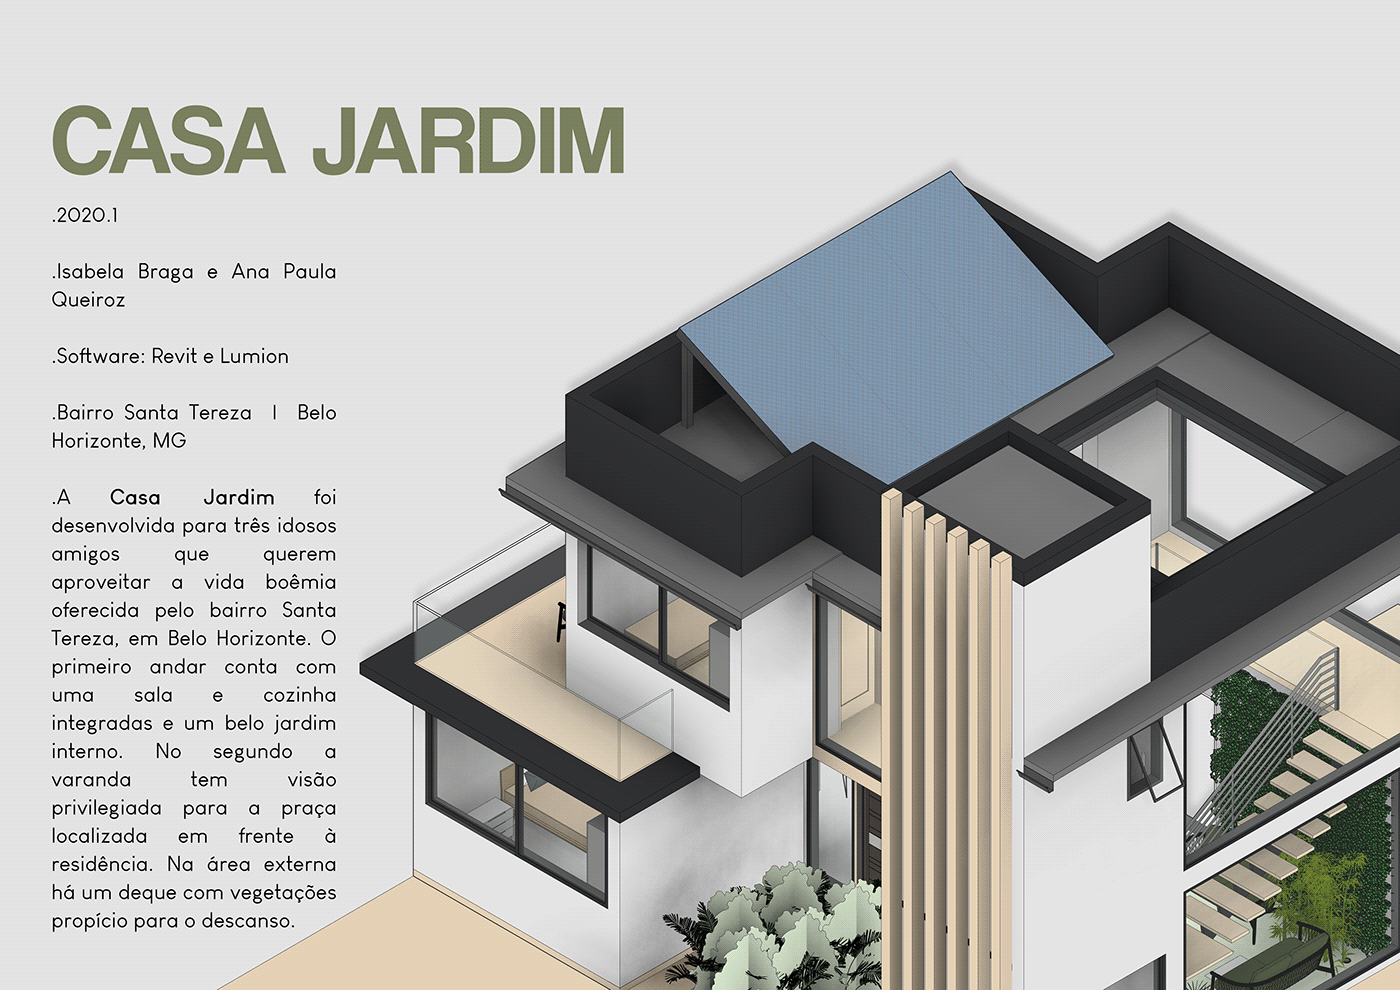 ARQUITETURA design de interiores portfolio urbanismo